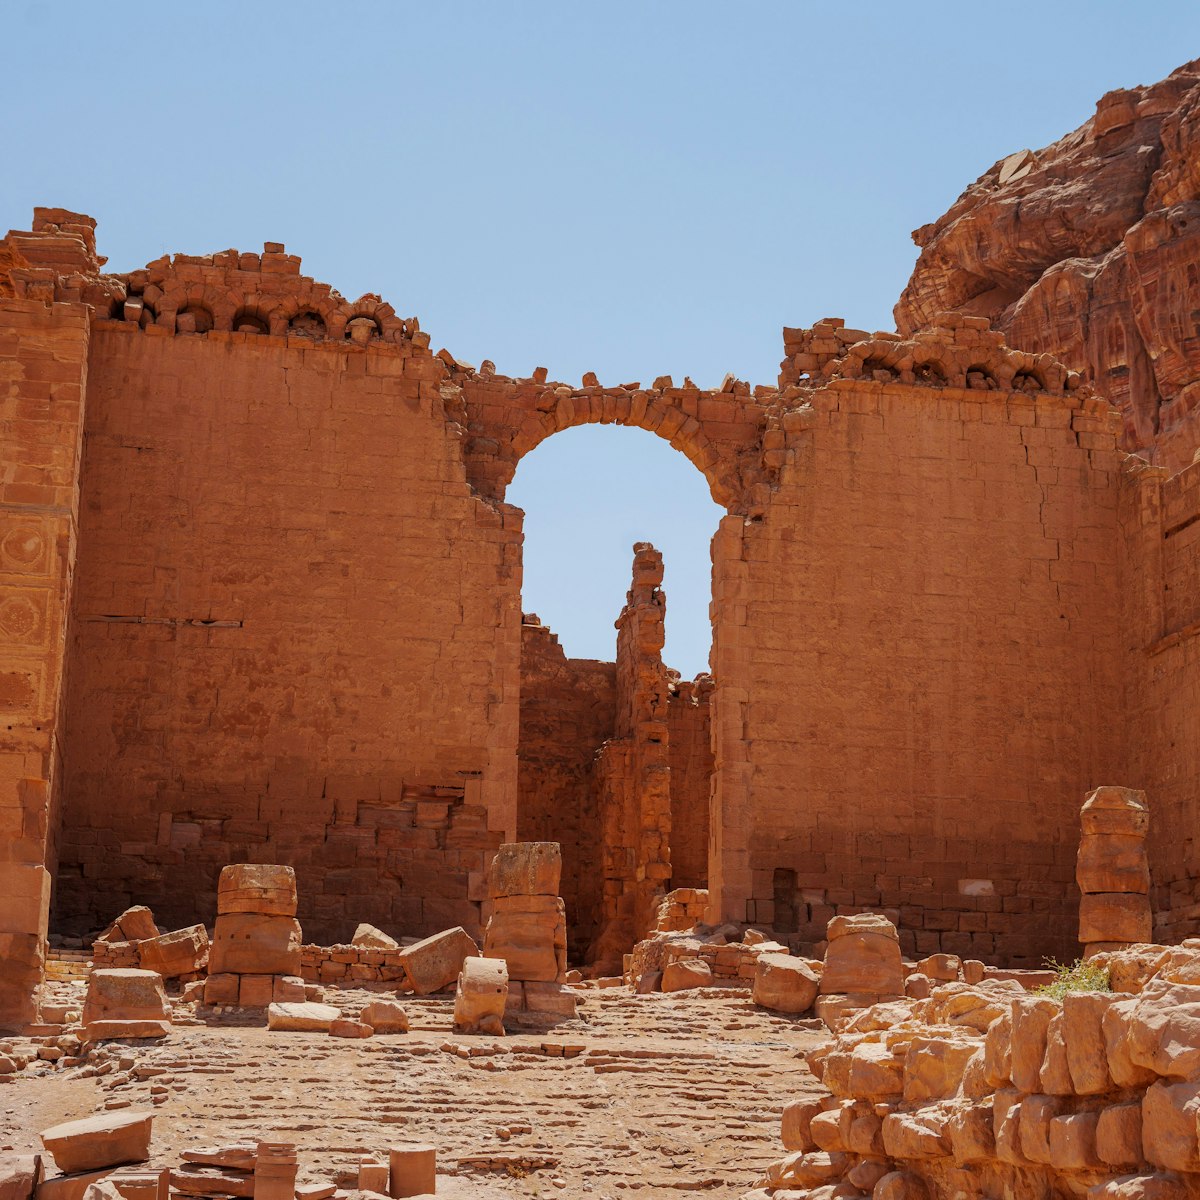 The ruins of the Qasr al-Bint temple in Petra.